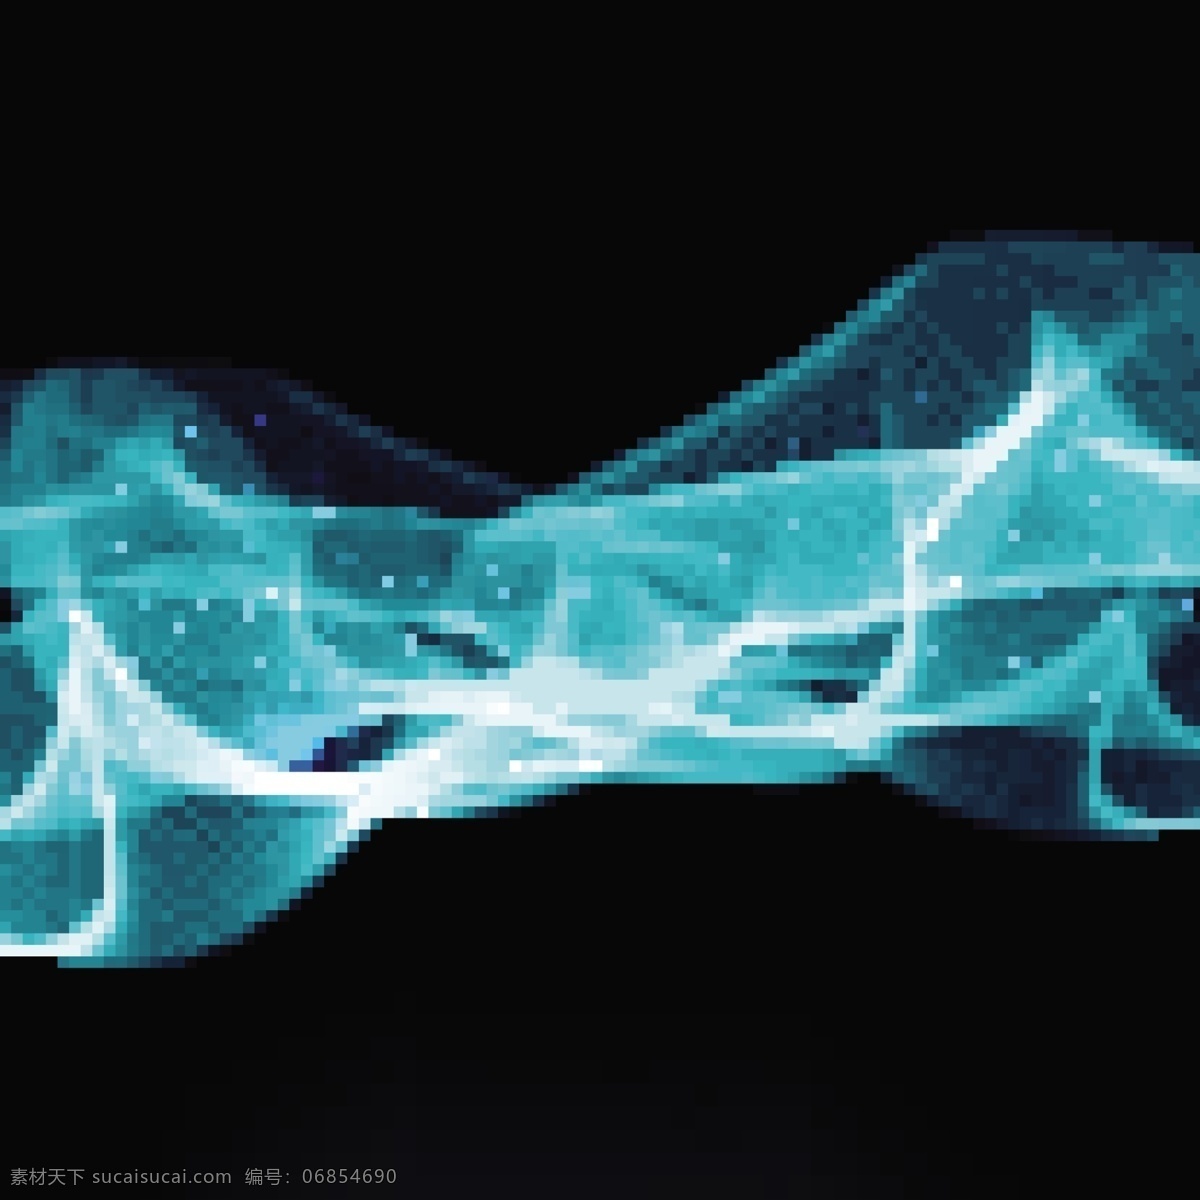 黑色 背景 上 明亮 蓝色 波浪 线条 抽象 技术 光线 形状 烟雾 霓虹灯 能量 灯光 现代 闪耀 装饰 力量 未来主义 辉光 流动 抽象的形状